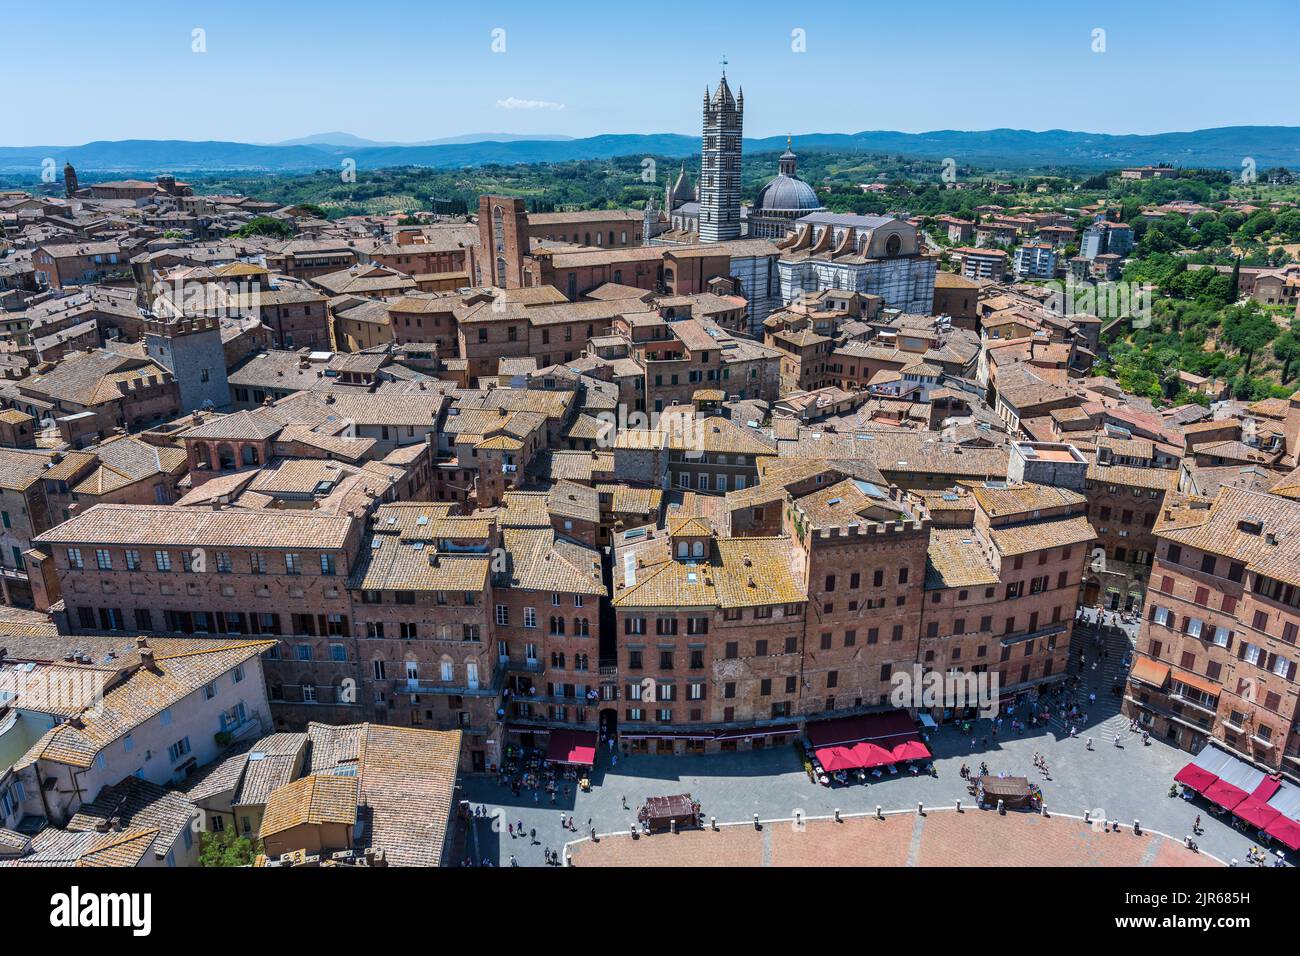 Vista desde la parte superior del campanario de Torr del Mangia mirando hacia abajo en la Piazza del Campo y los tejados rojos más allá del Duomo en Siena, Toscana, Italia Foto de stock